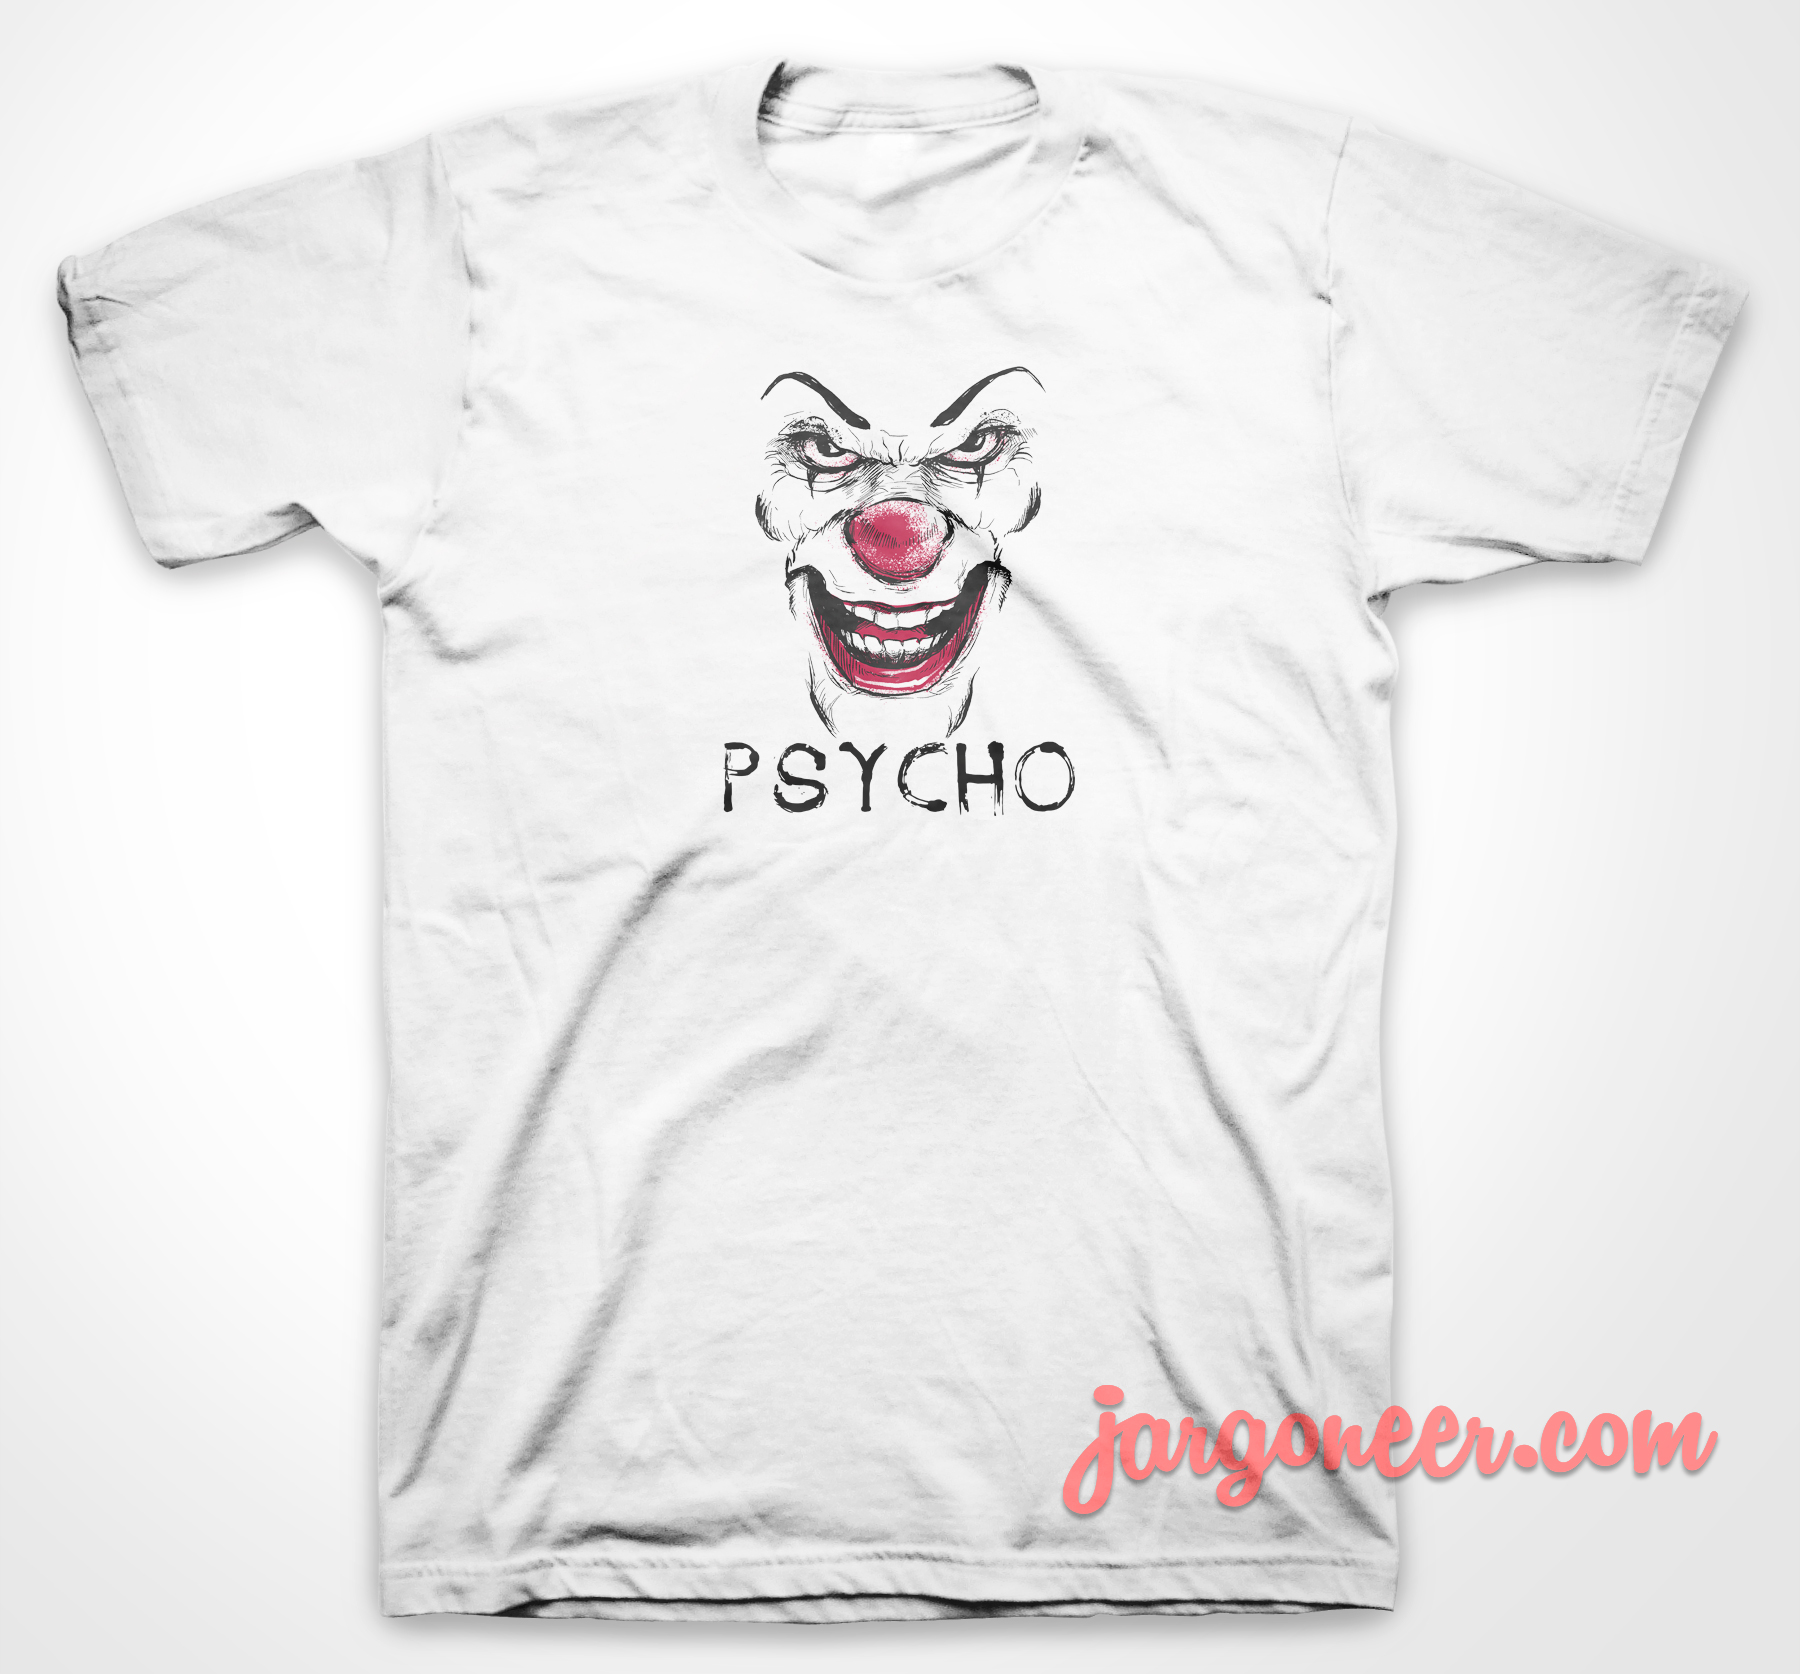 Psycho Clown 3 - Shop Unique Graphic Cool Shirt Designs